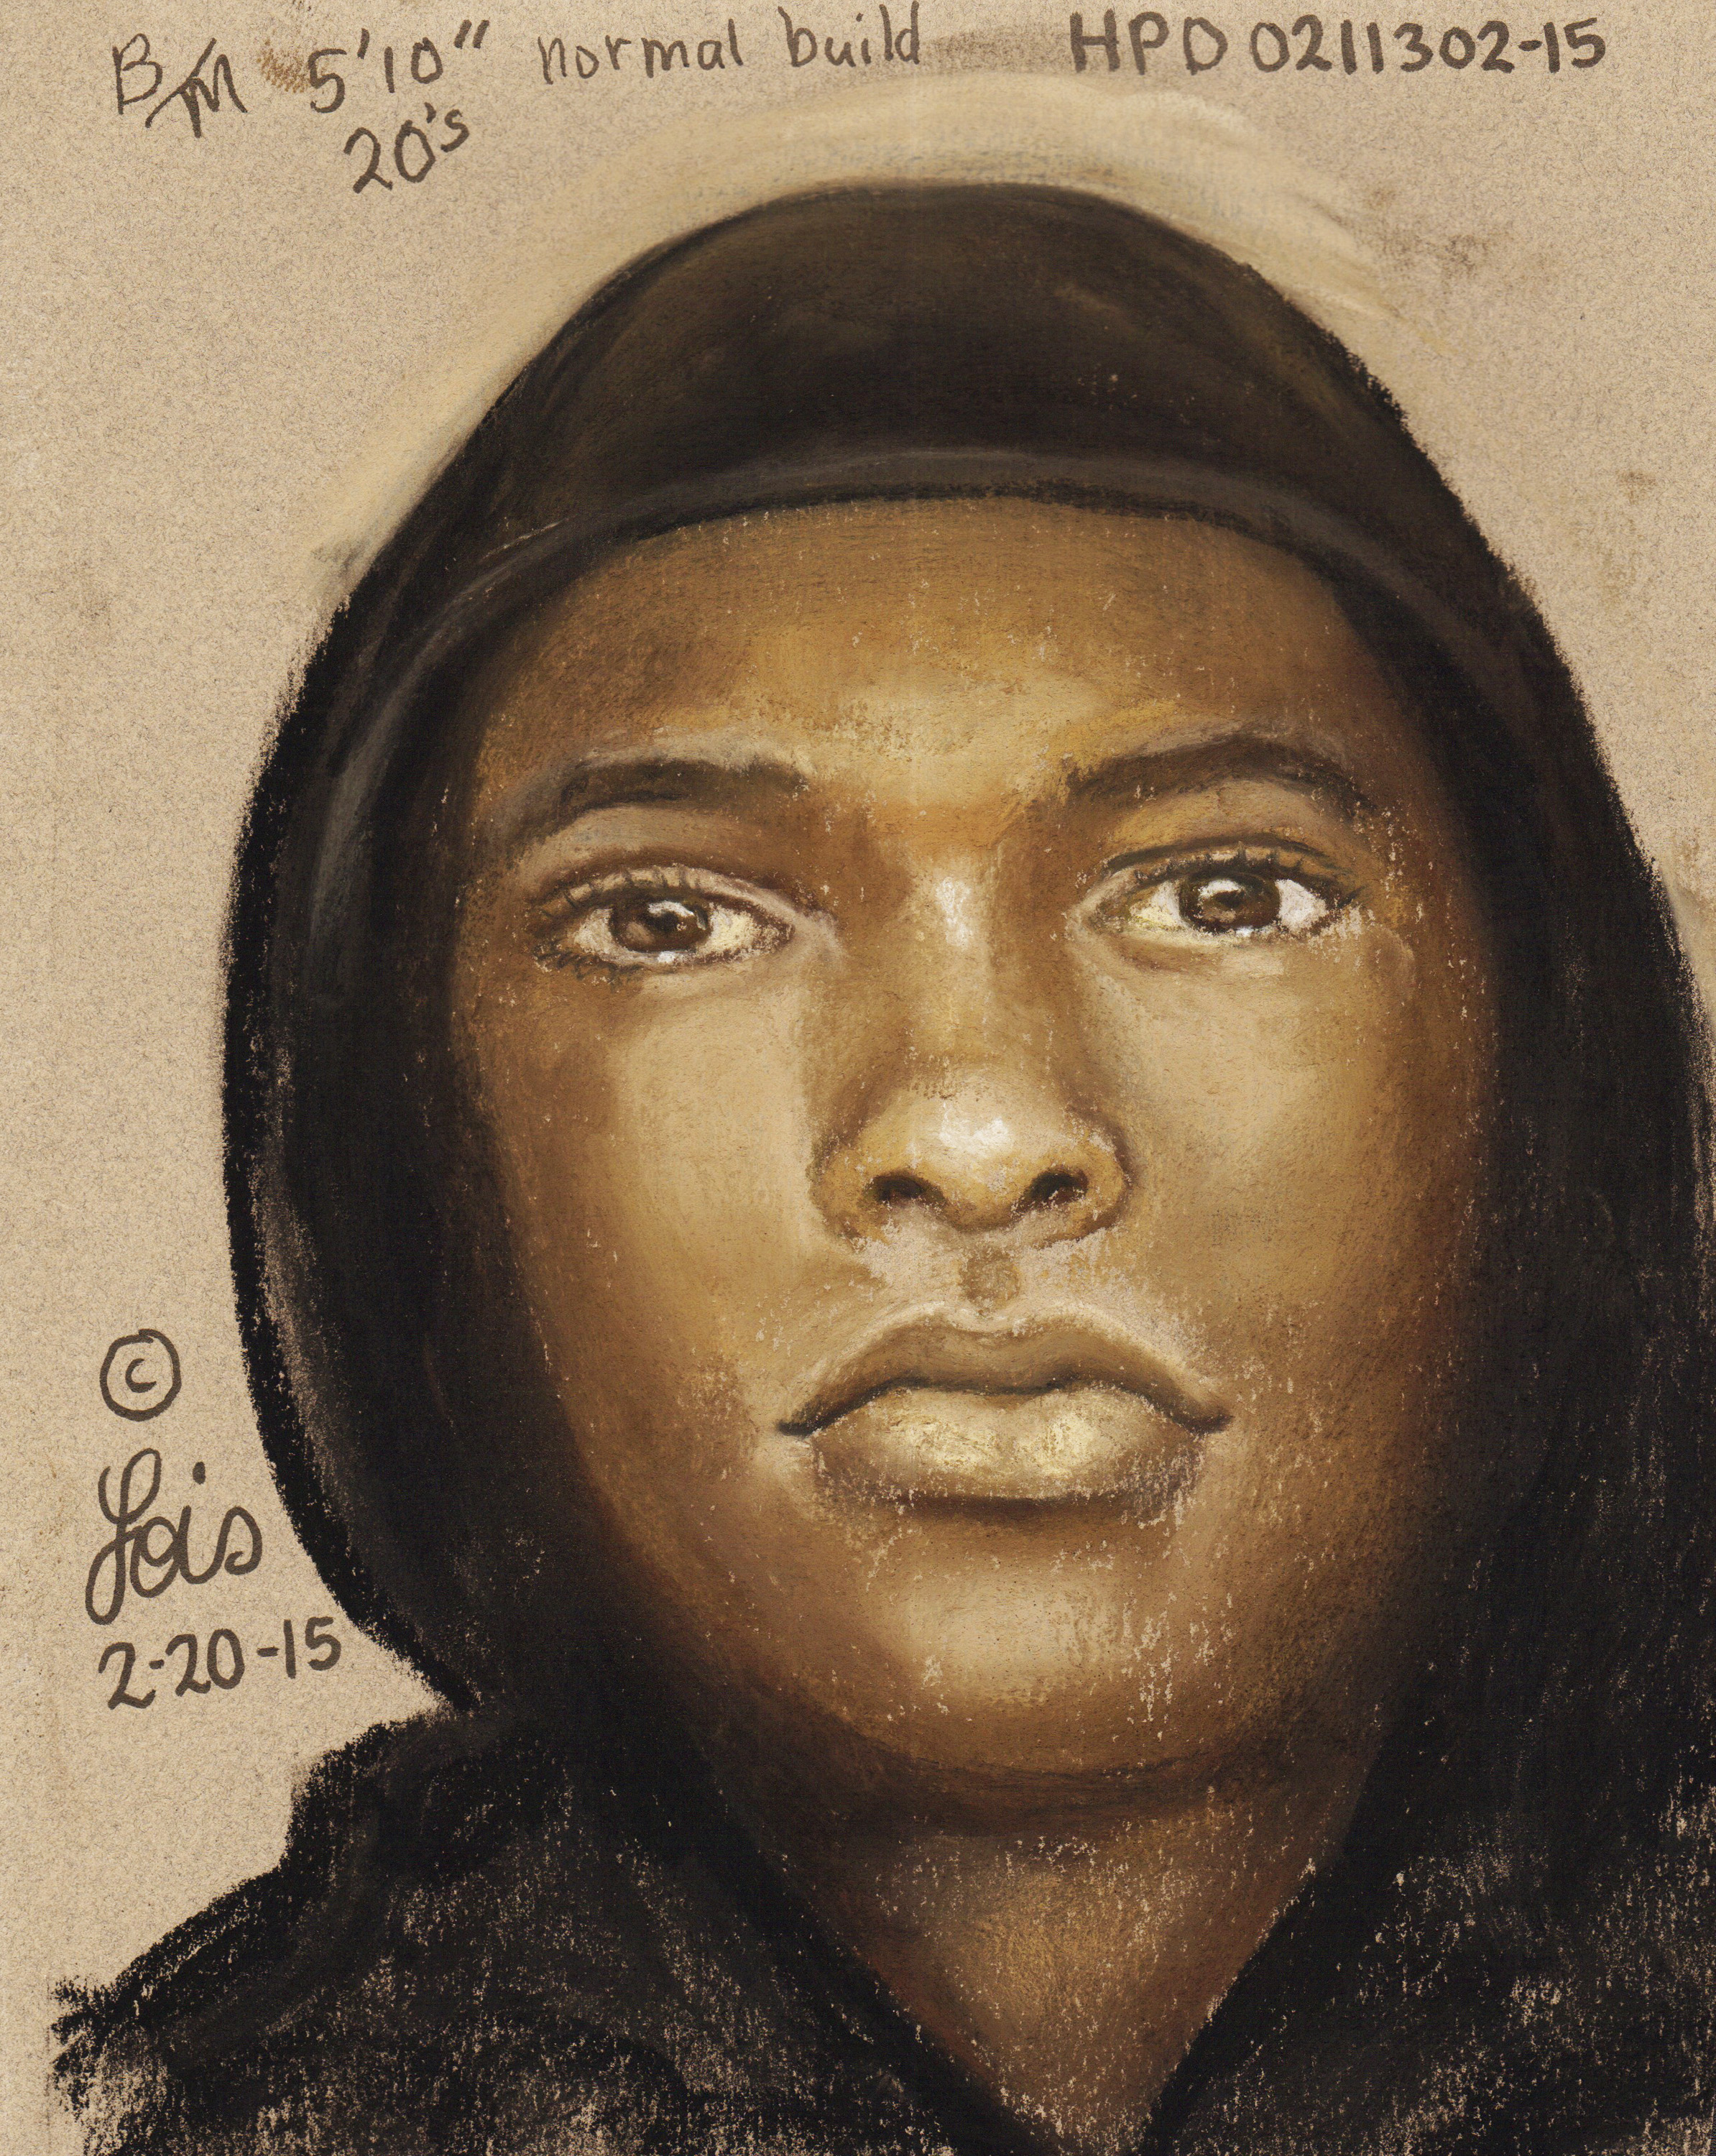 Composite Sketch of Suspect